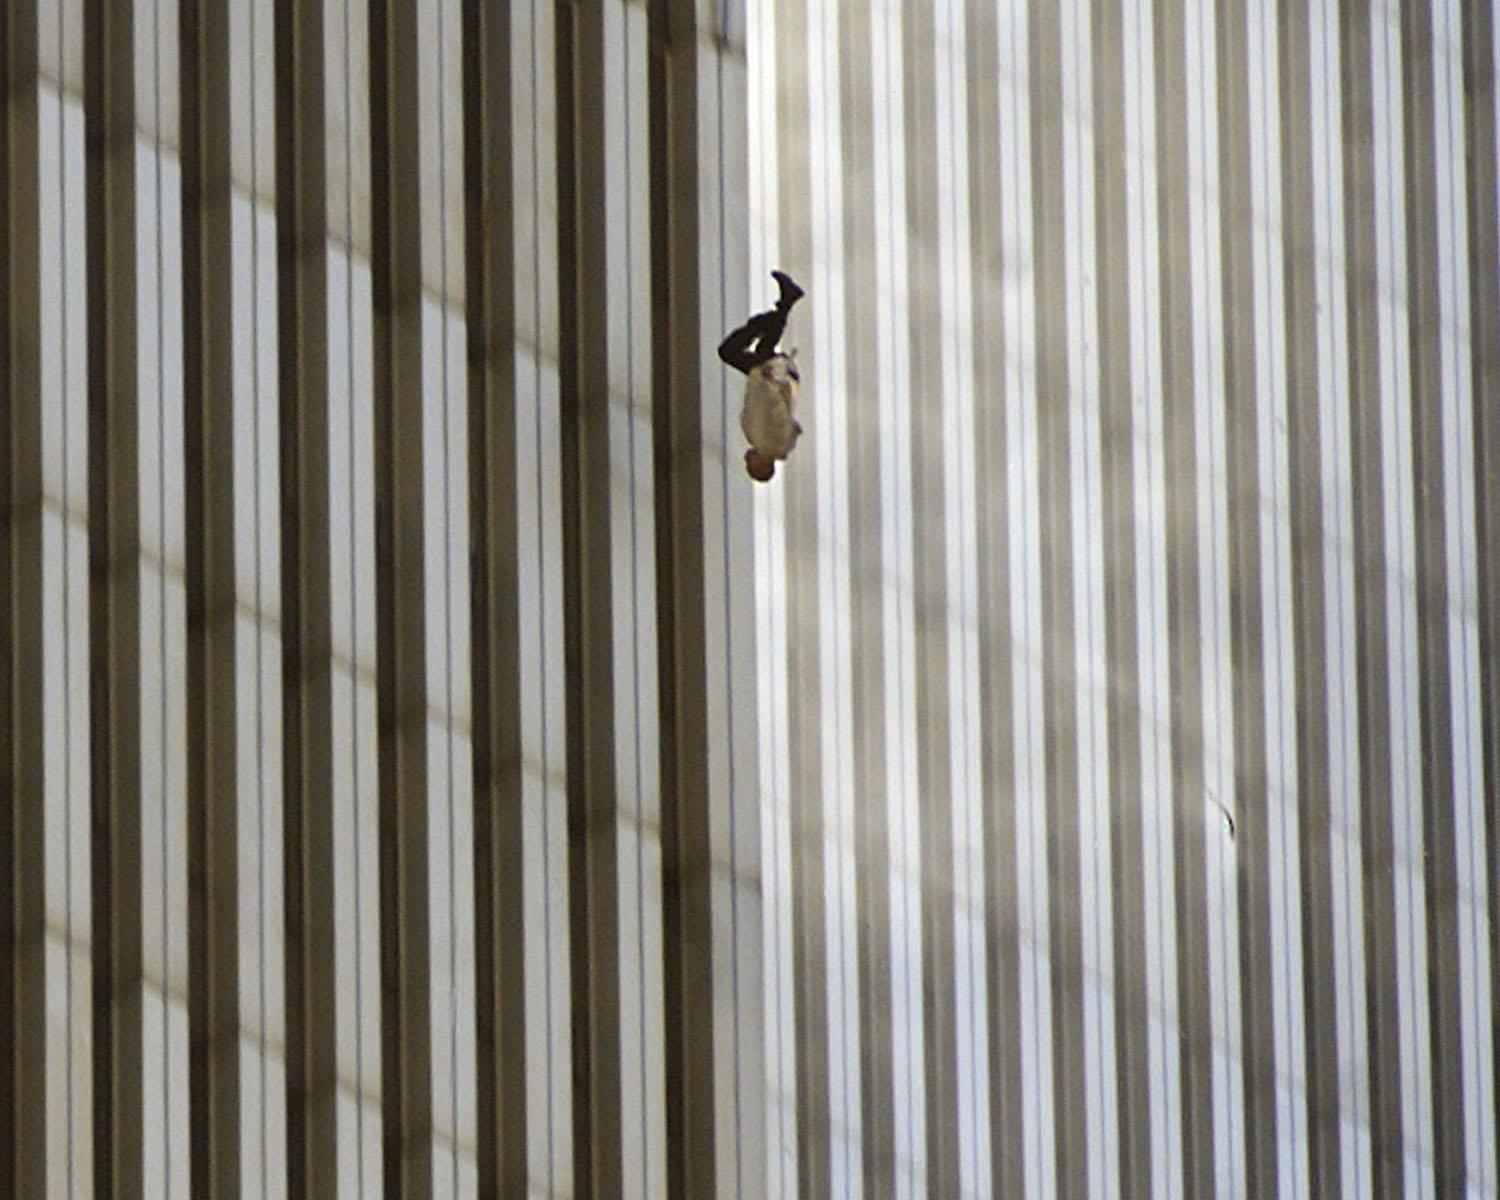 CONTENIDO GRÁFICO - ARCHIVO - Una persona cae de la torre norte del World Trade Center de Nueva York el martes 11 de septiembre de 2001 después de que terroristas chocaron dos aviones secuestrados en el World Trade Center y derribaron las torres gemelas de 110 pisos. (Foto AP / Richard Drew)